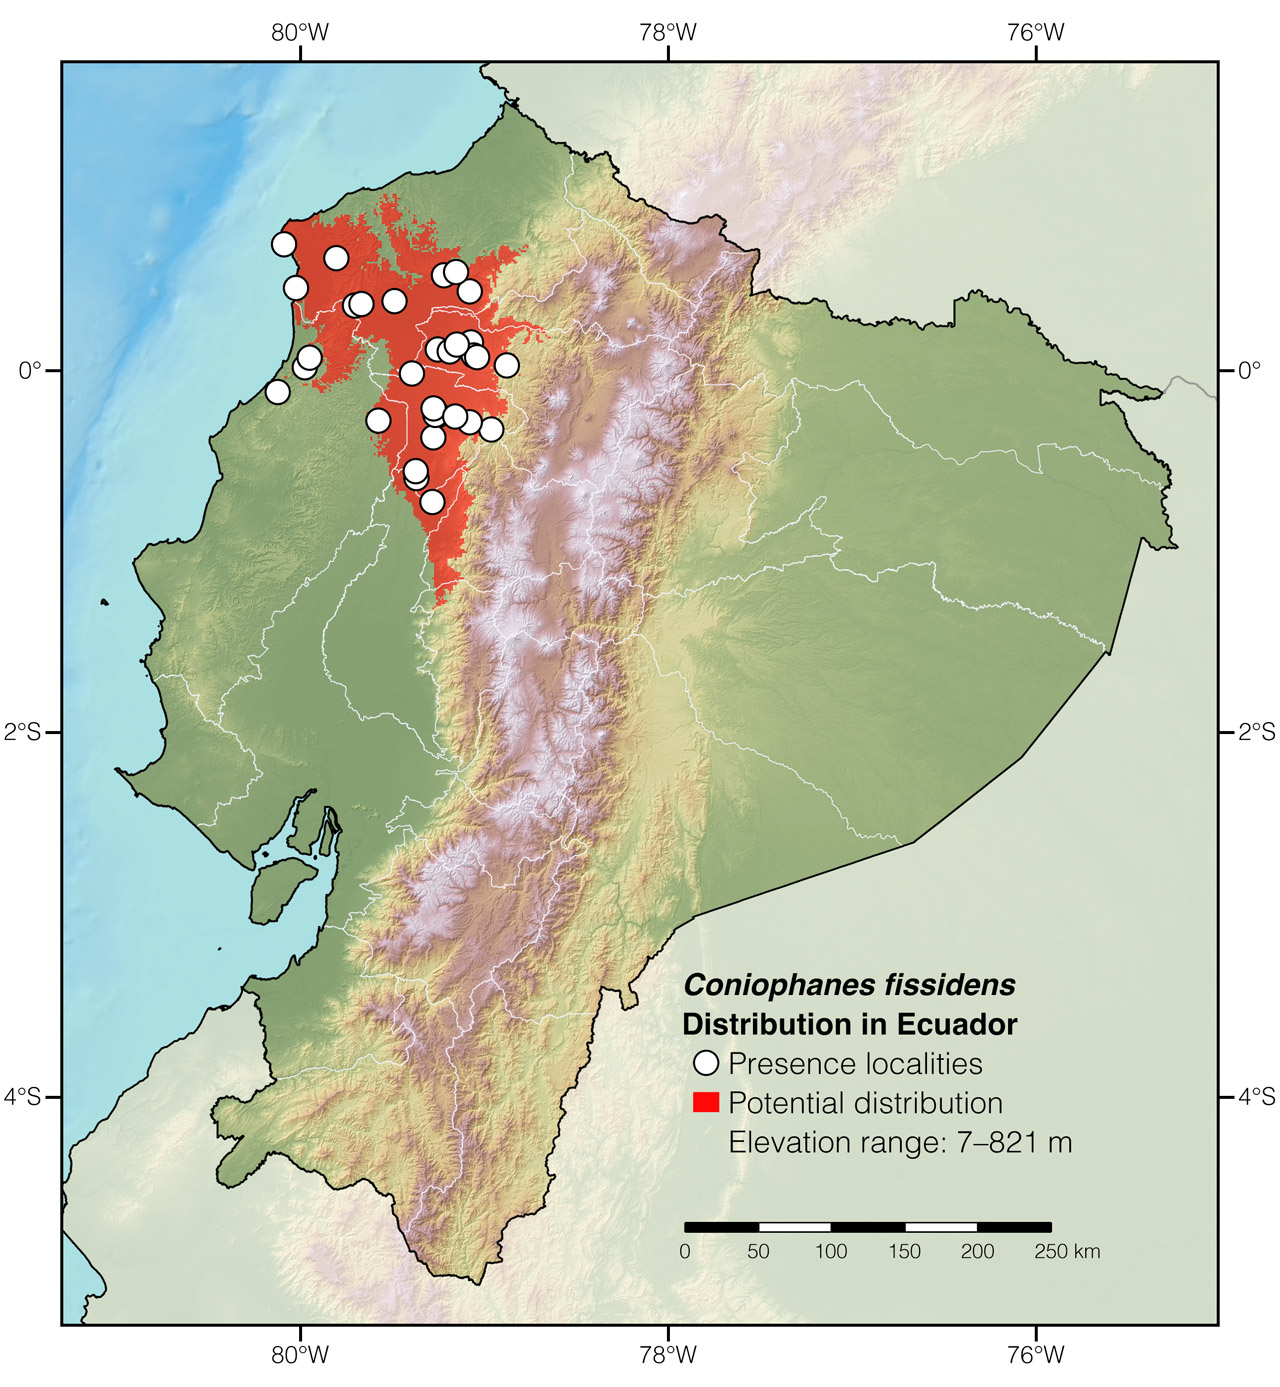 Distribution of Coniophanes fissidens in Ecuador